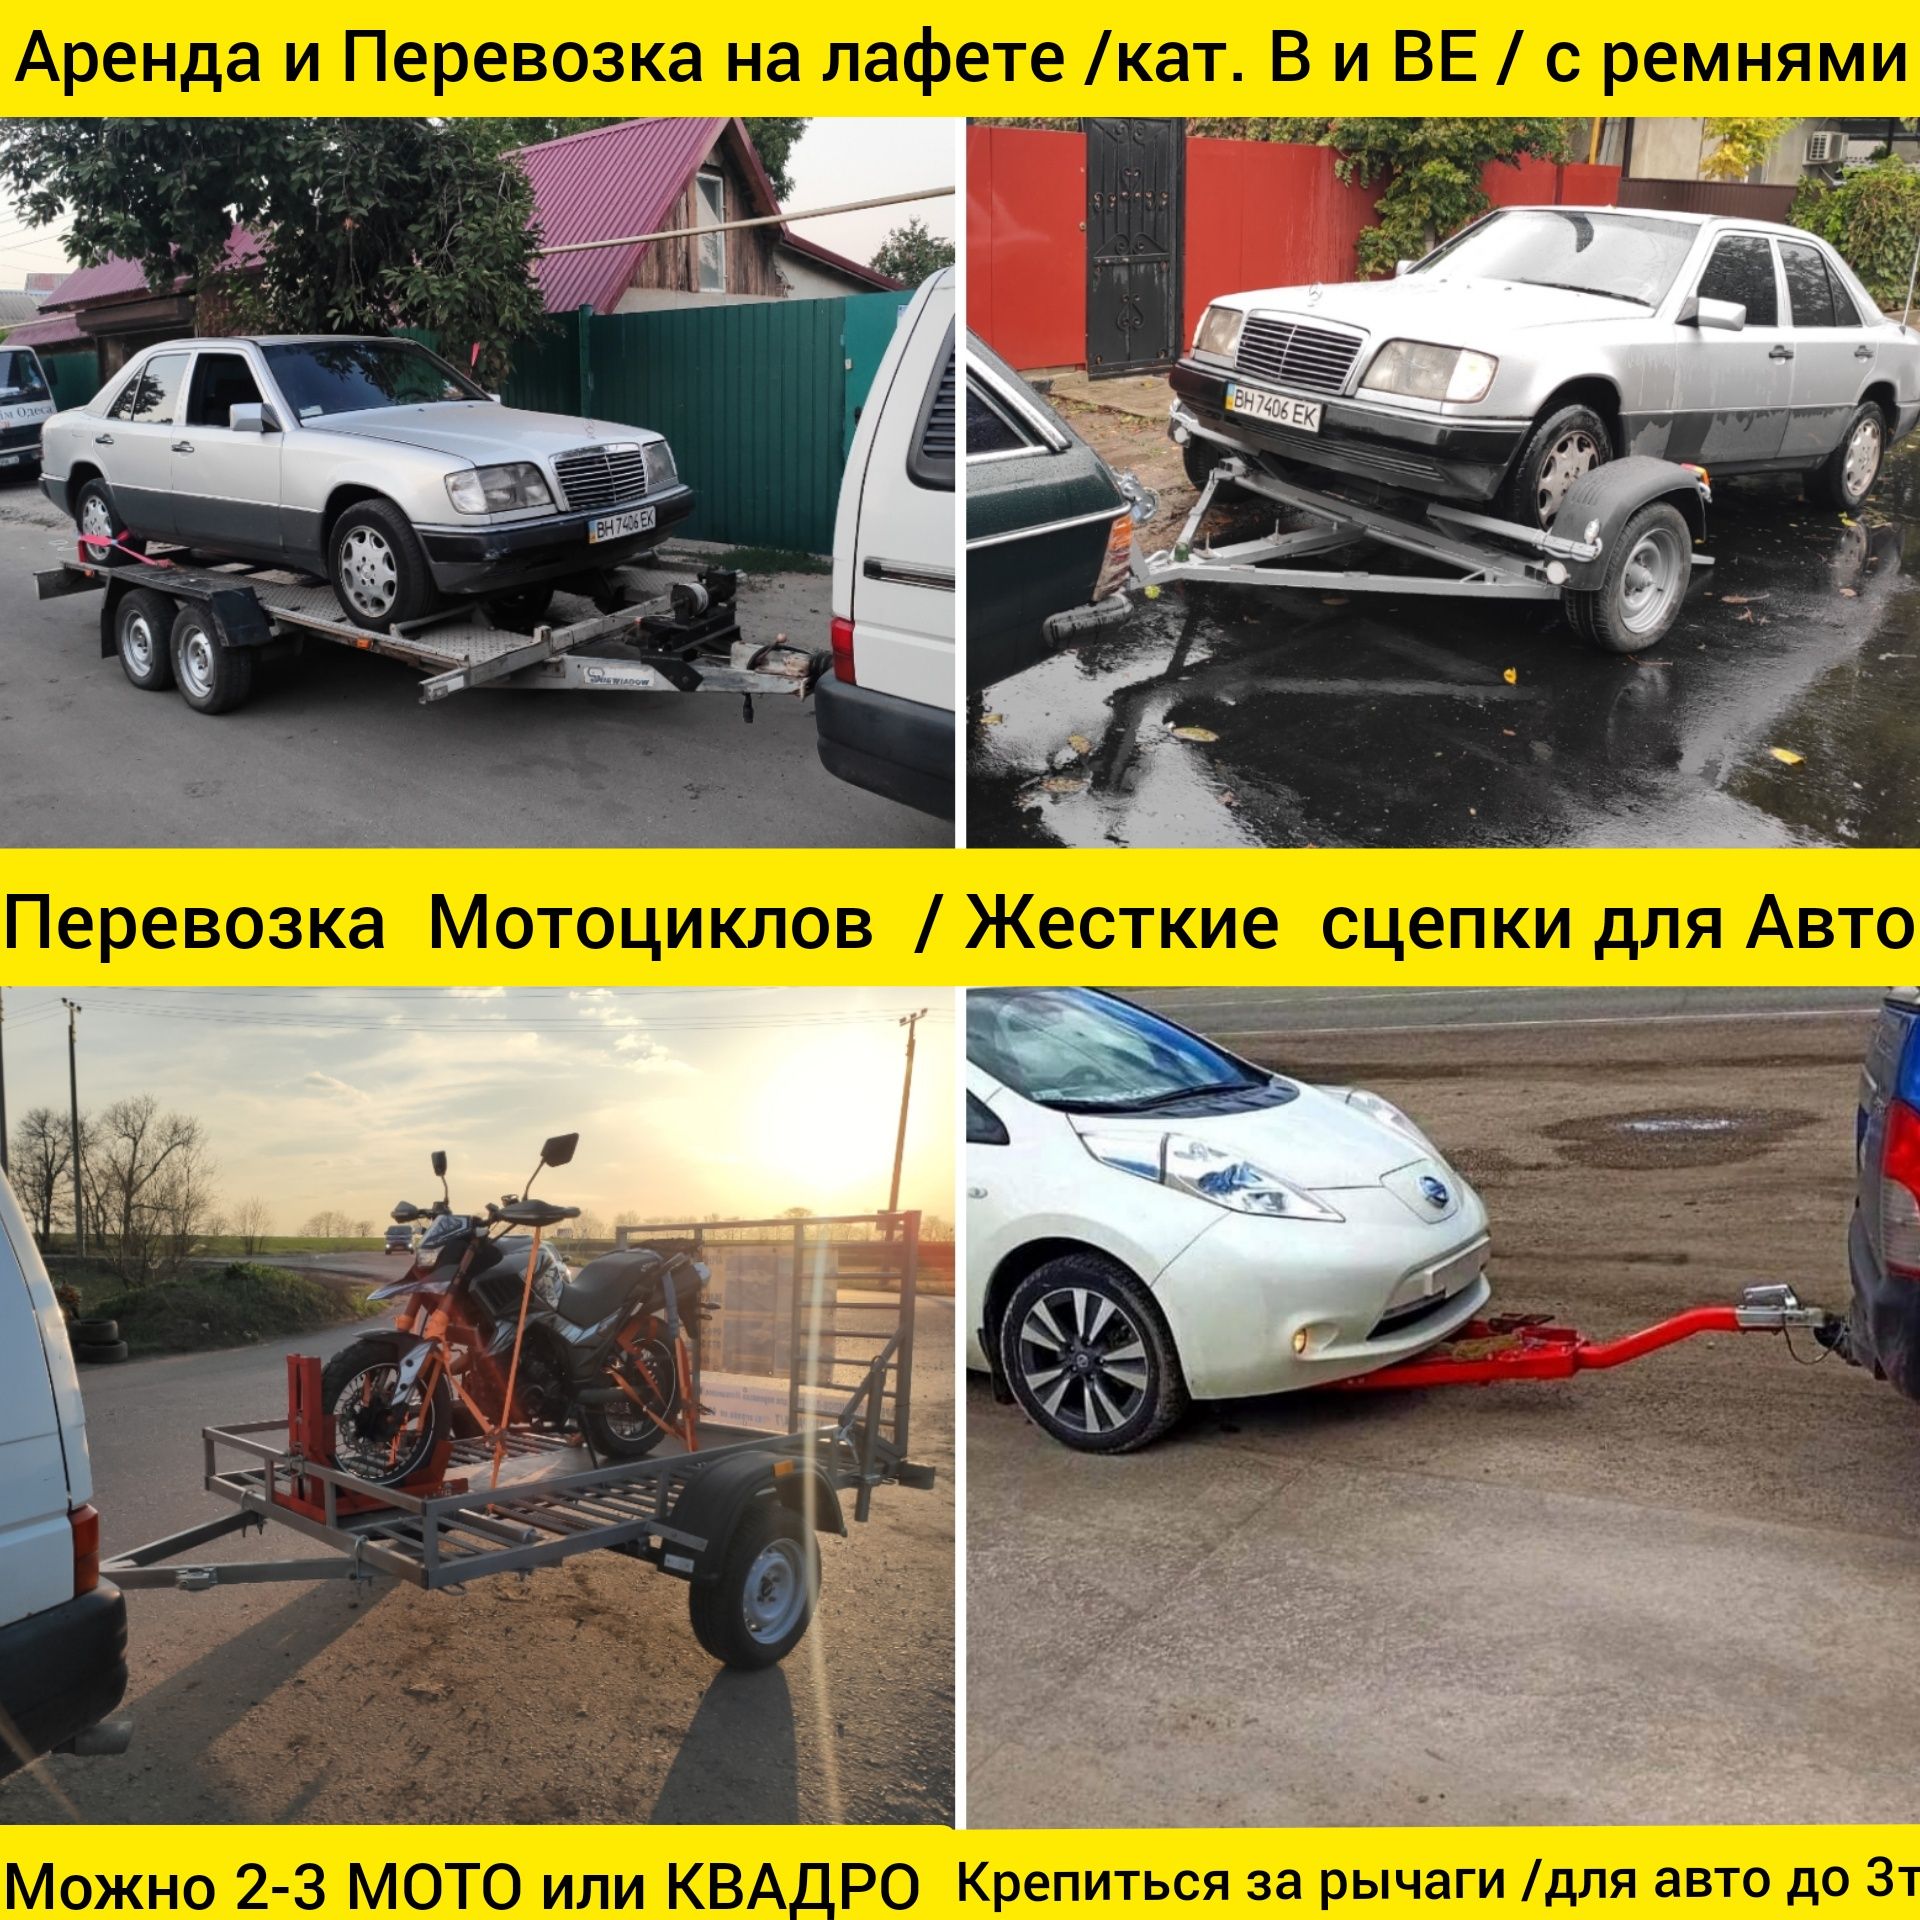 Приспособления для жесткой сцепки легковых автомобилей в Санкт-Петербурге